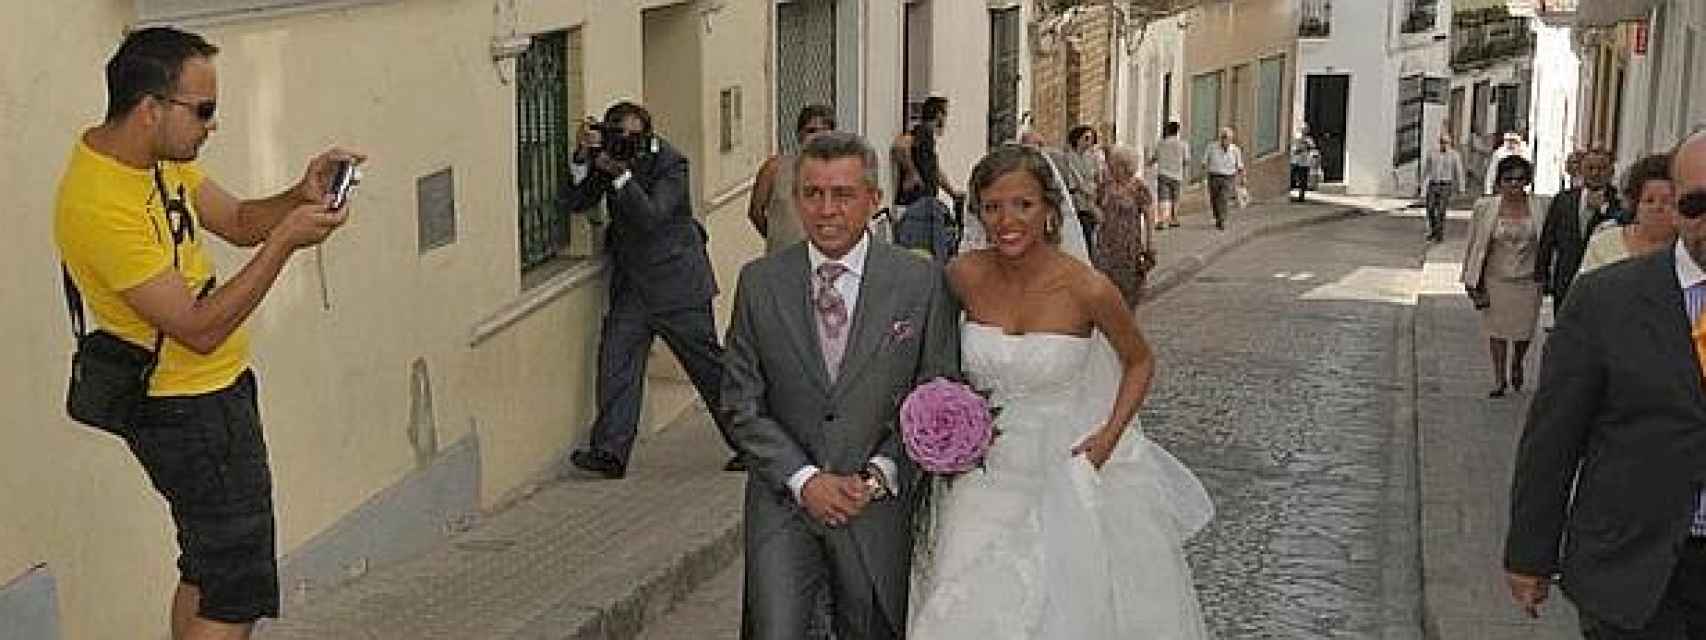 José Luis López 'el Turronero' junto a su hija Maria del Carmen el día de su boda (20011)